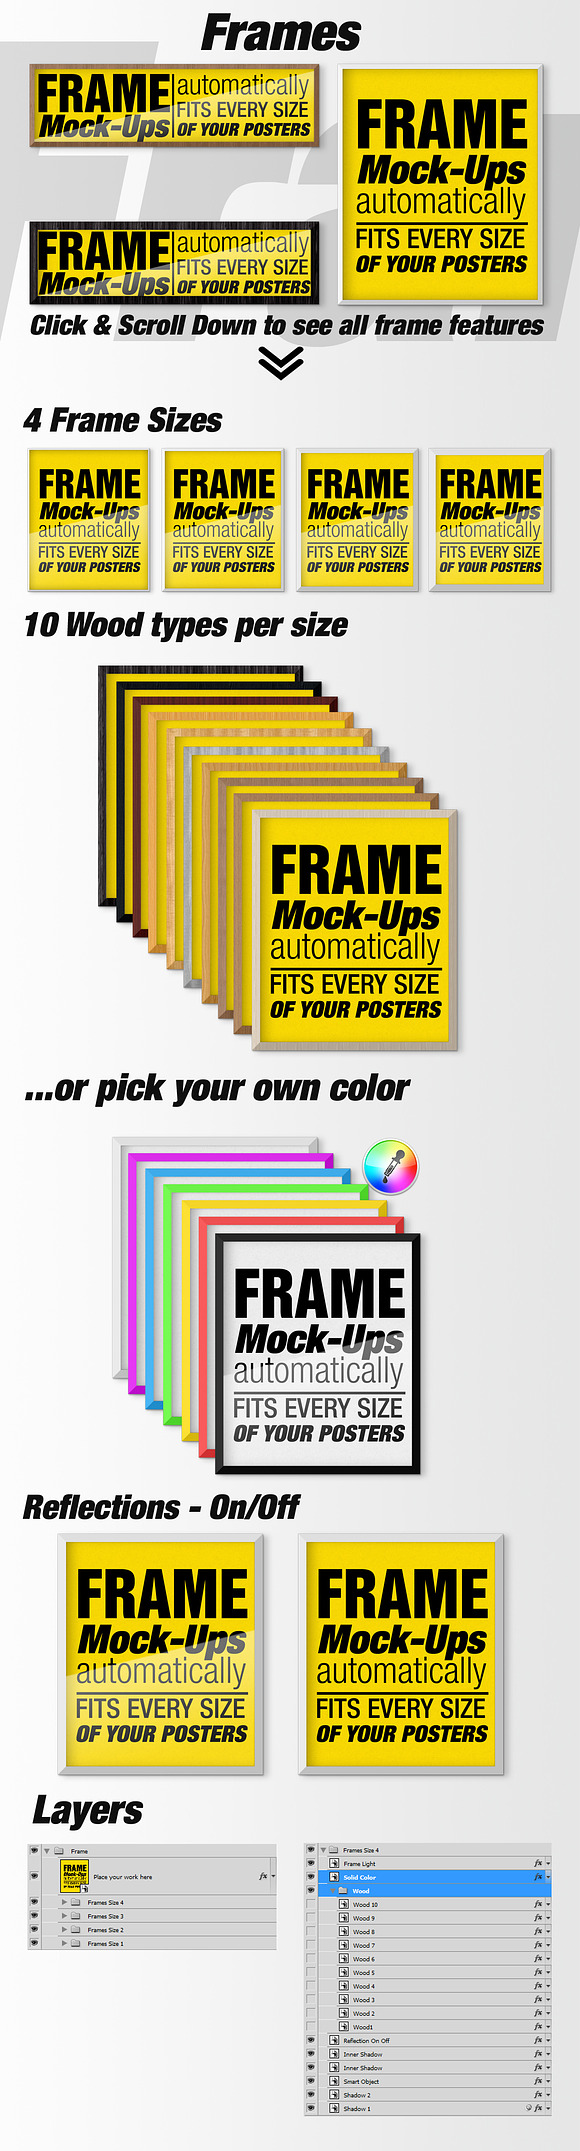 Canvas Mockups - Frames Mockups v 7 in Print Mockups - product preview 5